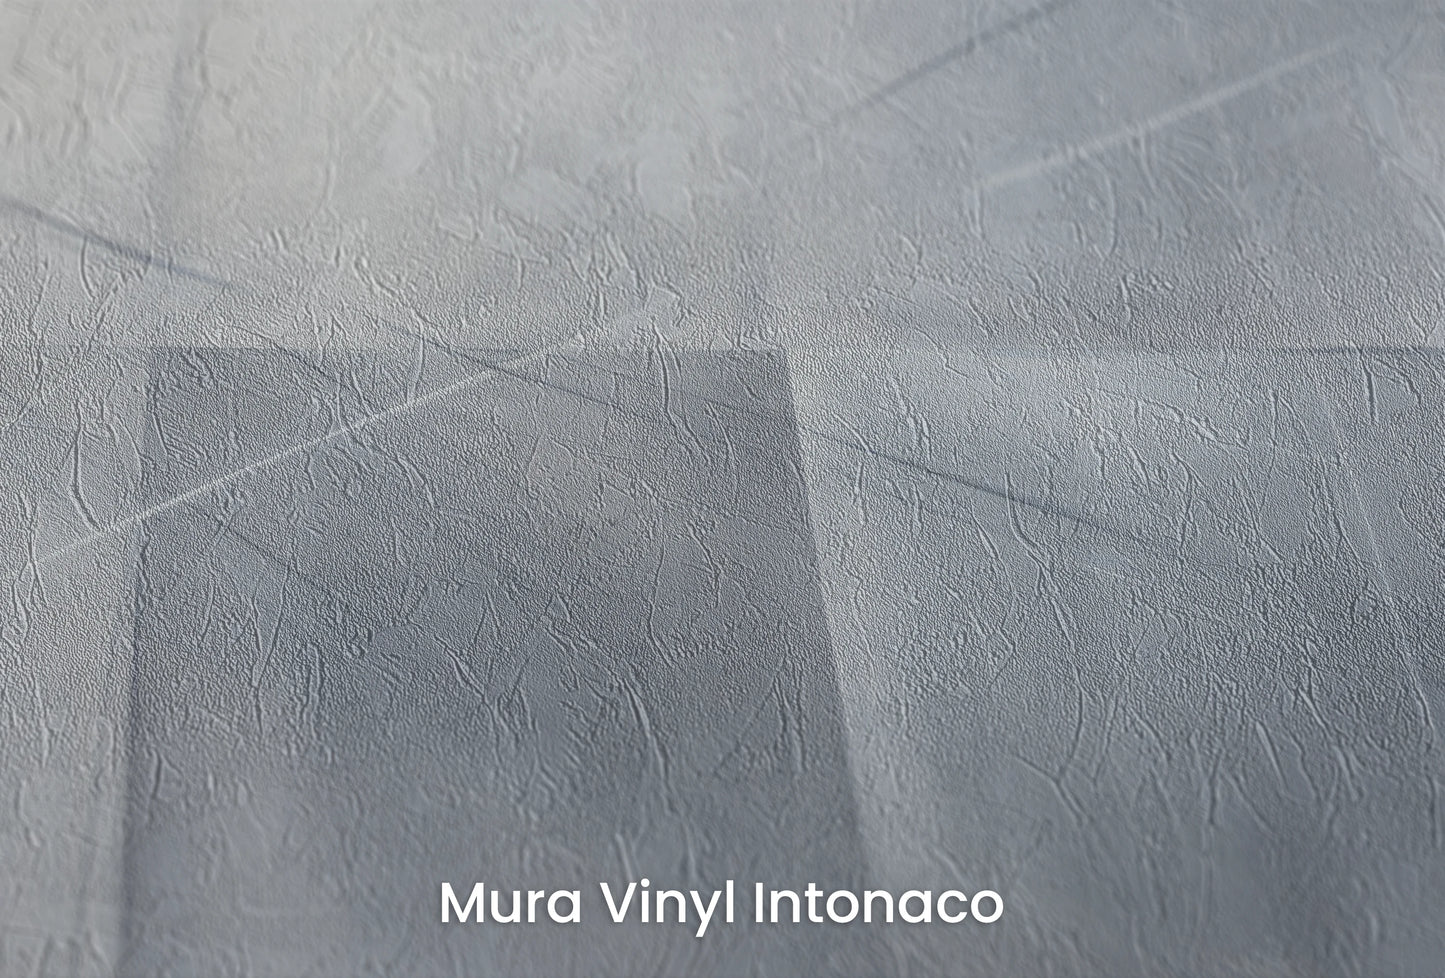 Zbliżenie na artystyczną fototapetę o nazwie Urban Scape na podłożu Mura Vinyl Intonaco - struktura tartego tynku.